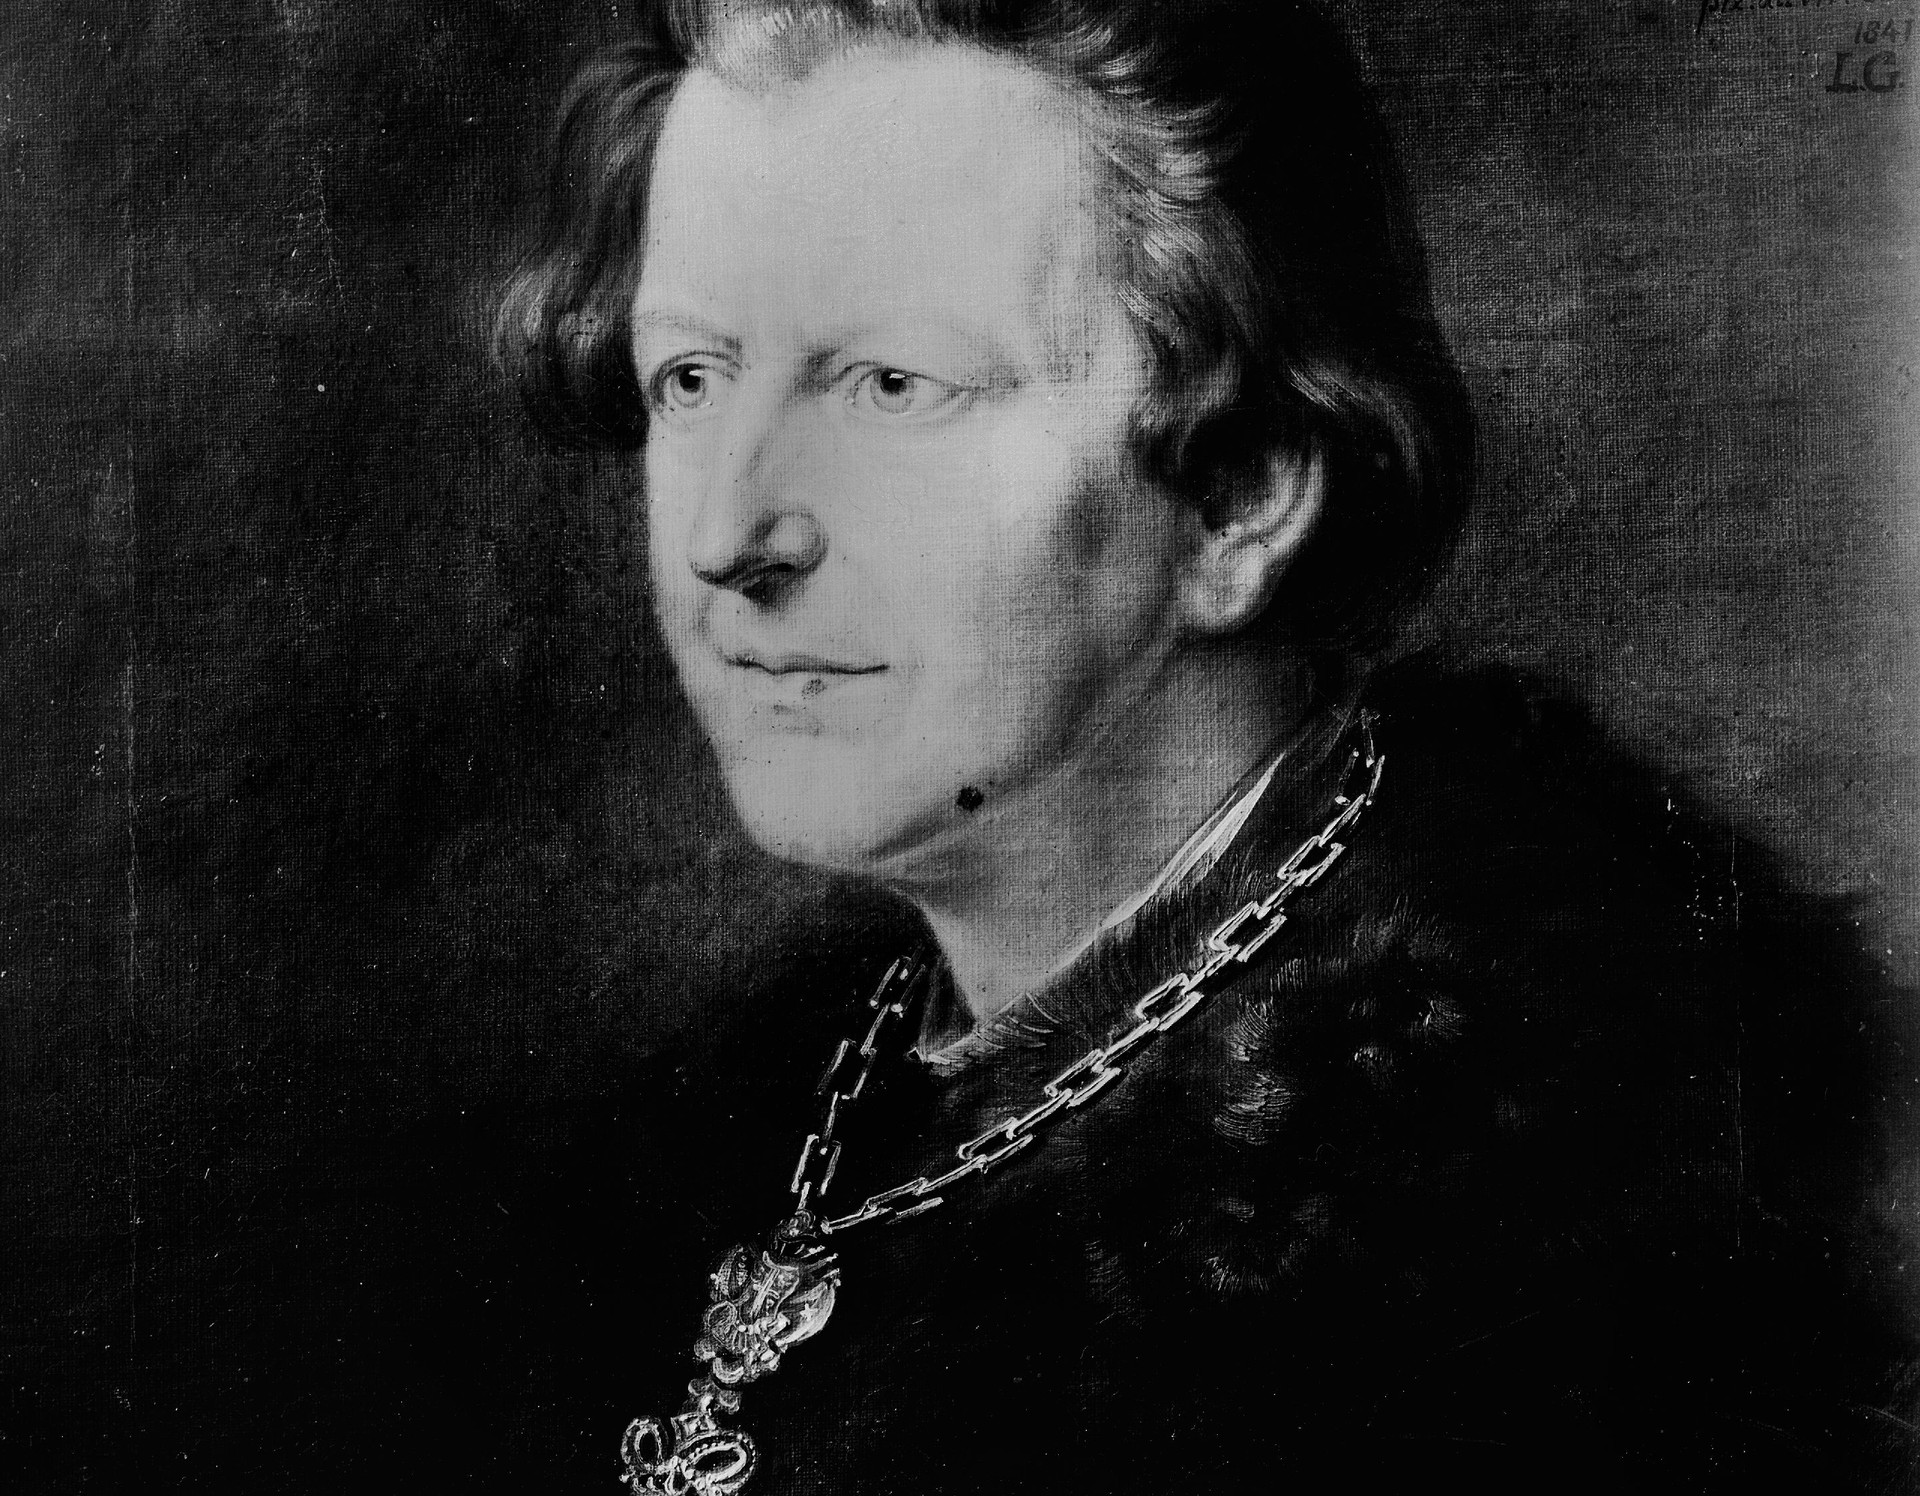 Bild 7: Onkel Werner von Haxthausen, Ludwig Emil Grimm, um 1841, © LWL-DLBW